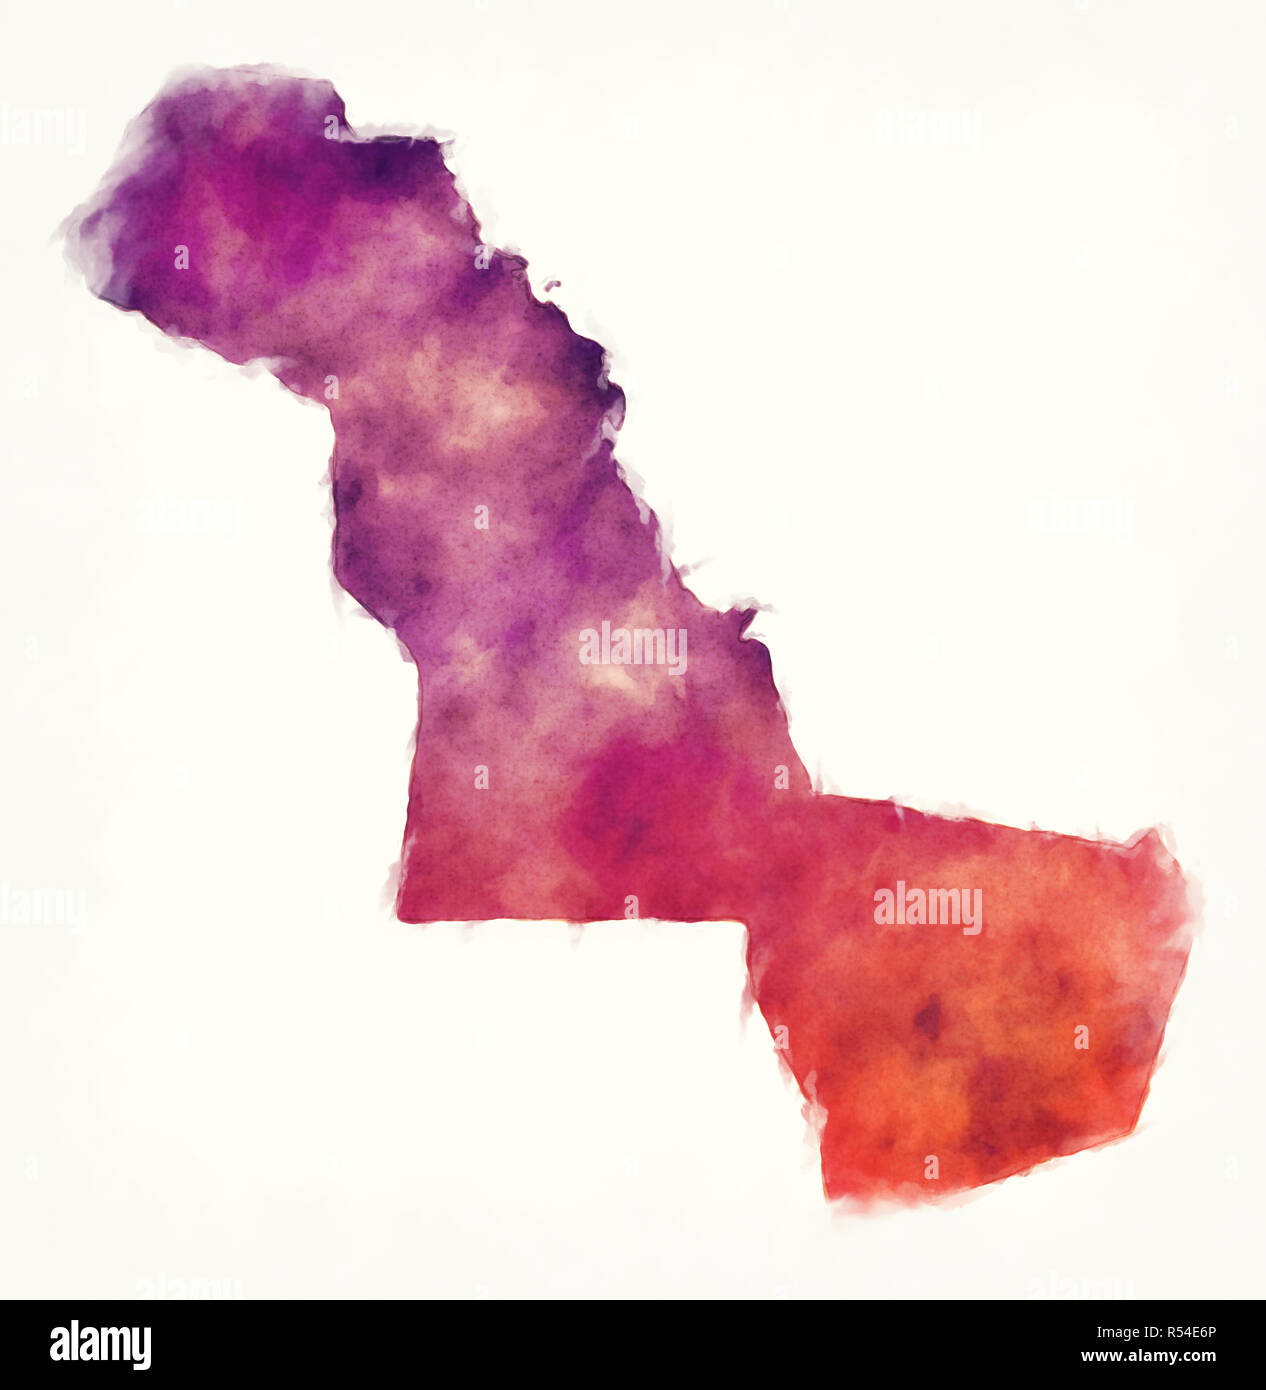 Östlichen Provinz region Aquarell Karte von Saudi-arabien vor einem weißen Hintergrund Stockfoto